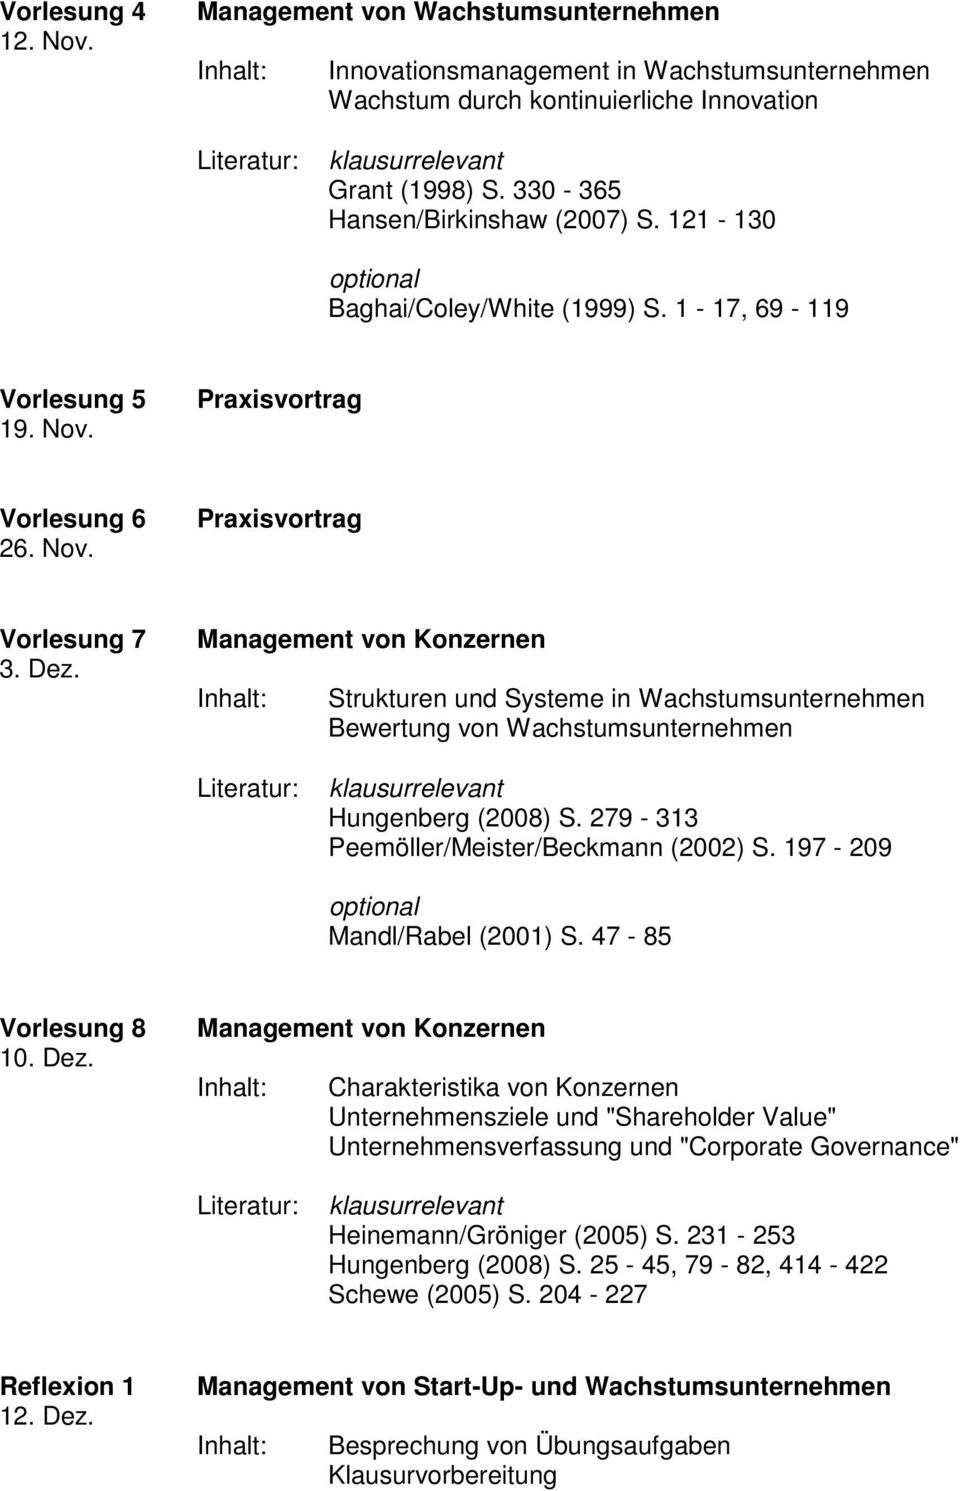 Strukturen und Systeme in Wachstumsunternehmen Bewertung von Wachstumsunternehmen Hungenberg (2008) S. 279-313 Peemöller/Meister/Beckmann (2002) S. 197-209 Mandl/Rabel (2001) S. 47-85 Vorlesung 8 10.